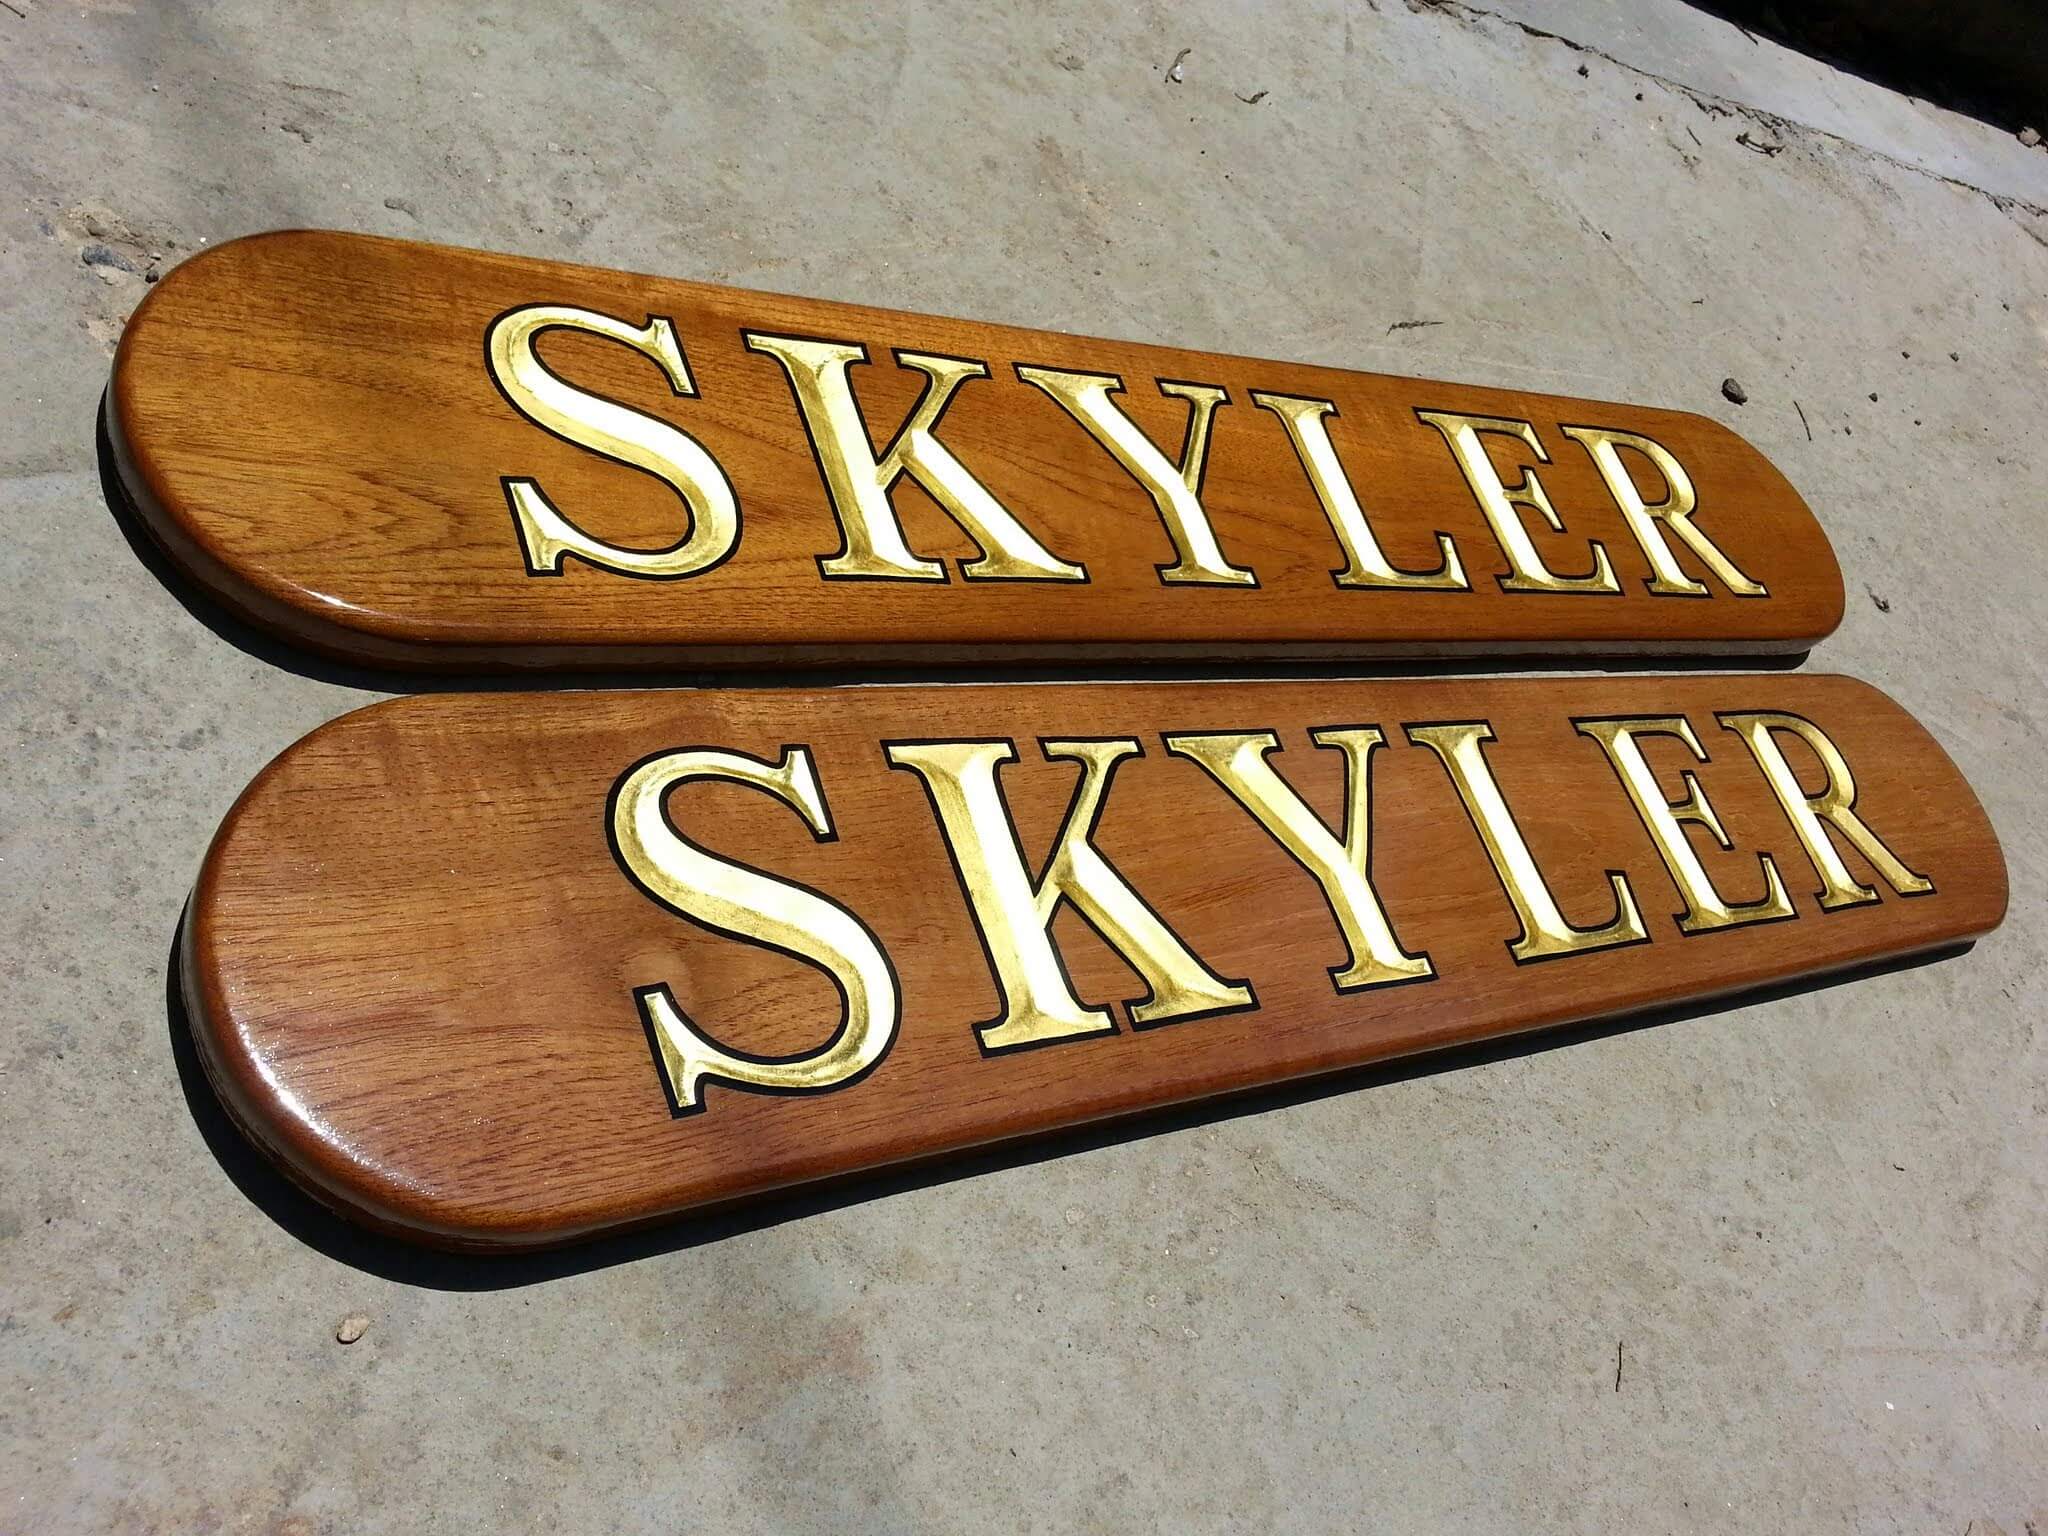 Teak Quarterboards for Skyler